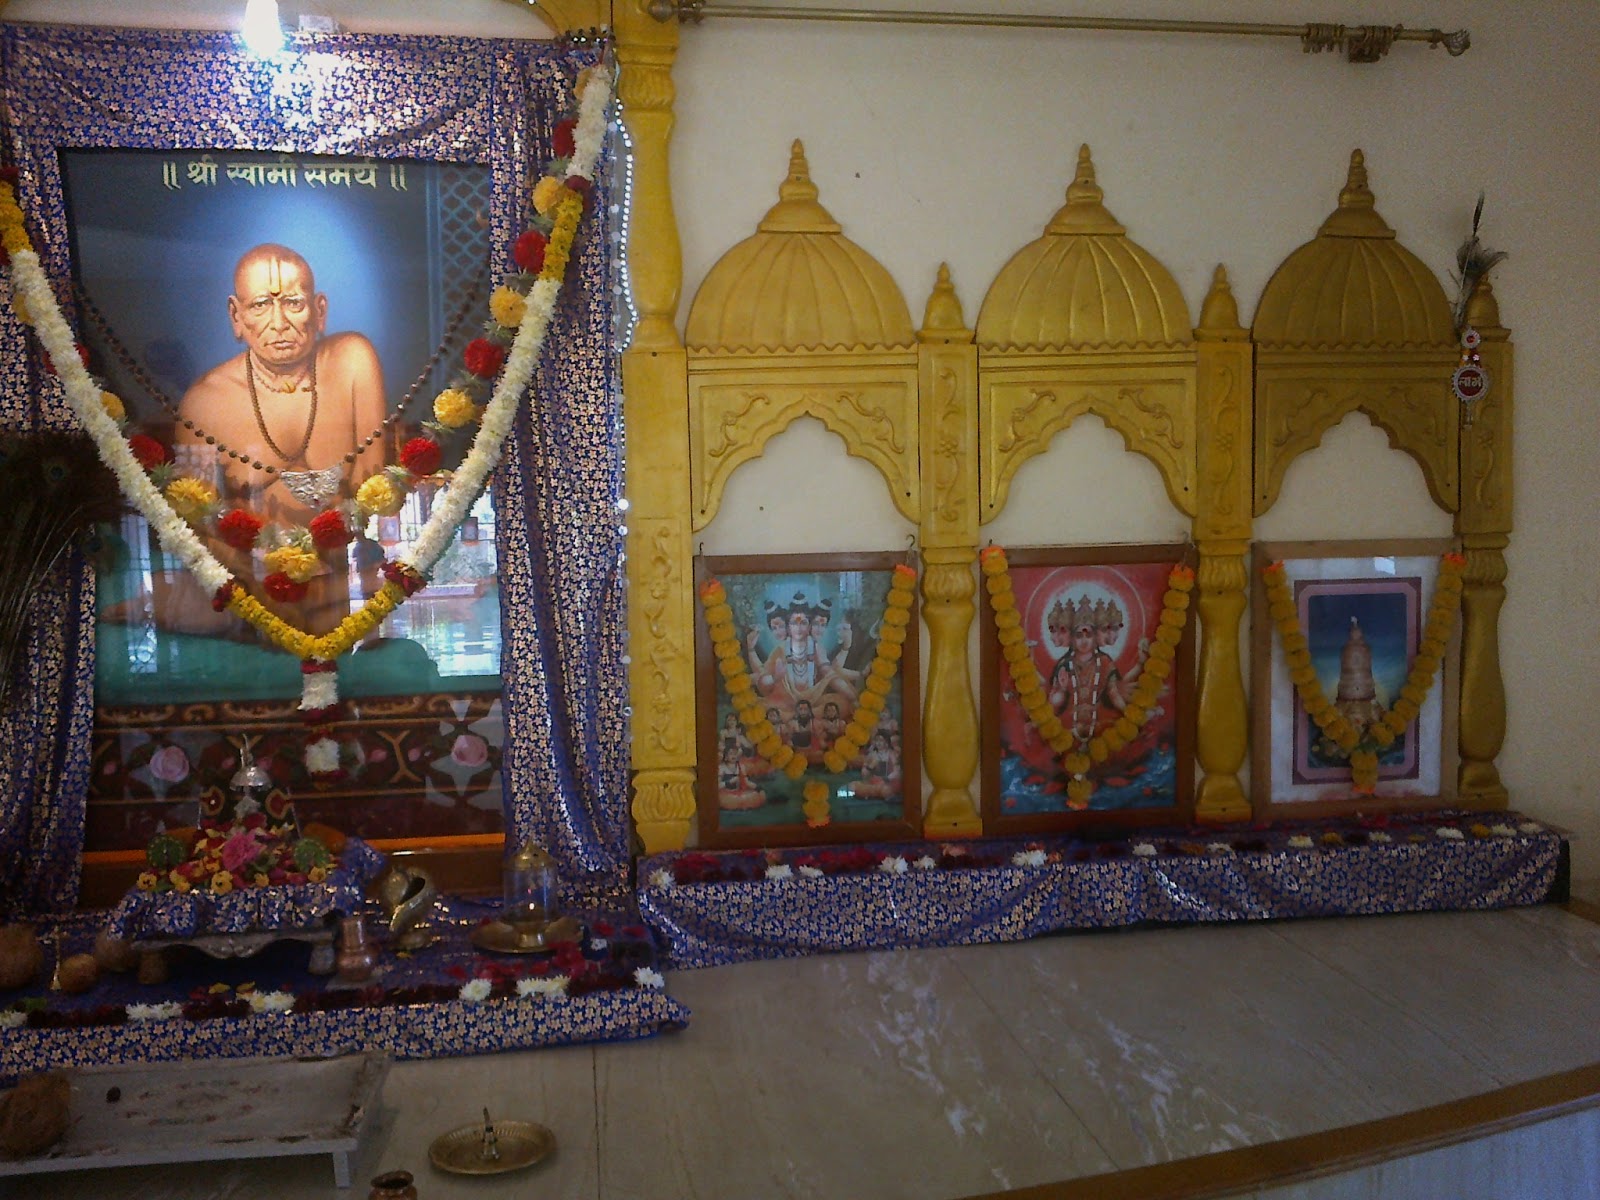 swami samarth temple in usa